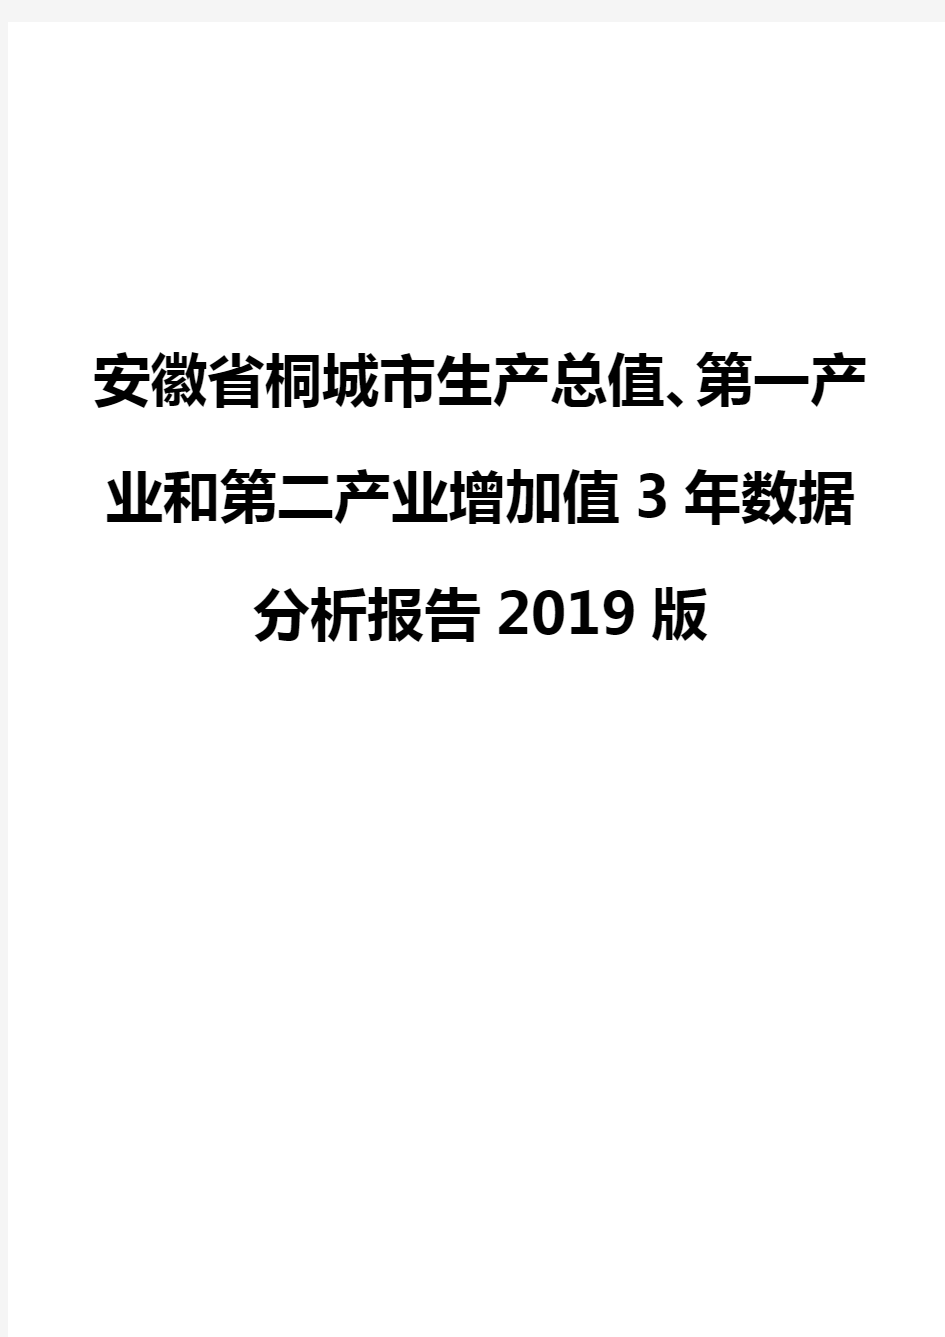 安徽省桐城市生产总值、第一产业和第二产业增加值3年数据分析报告2019版